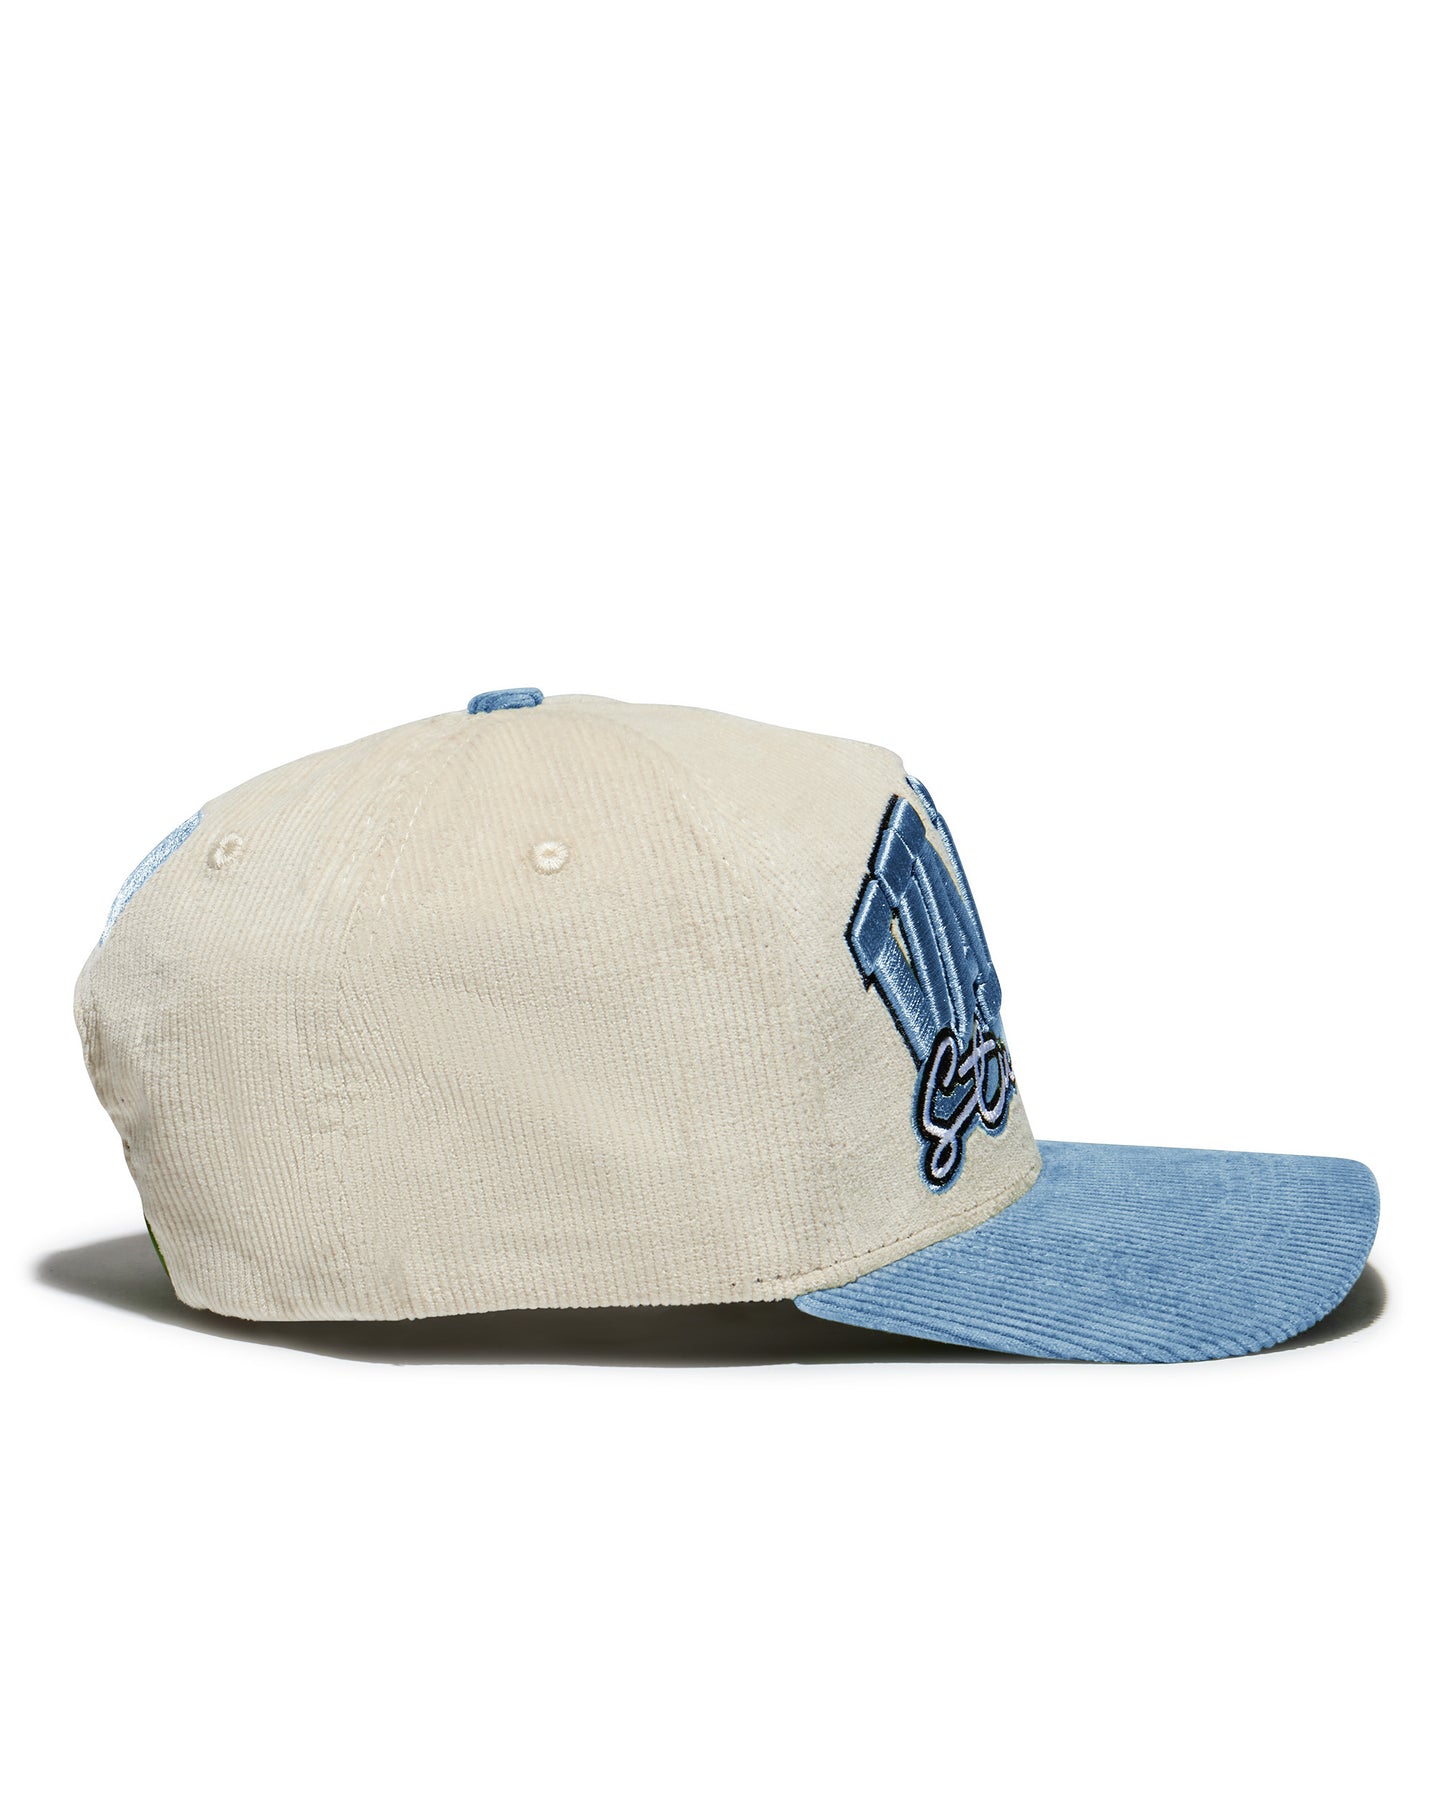 VALE BLUE CORDUROY HAT